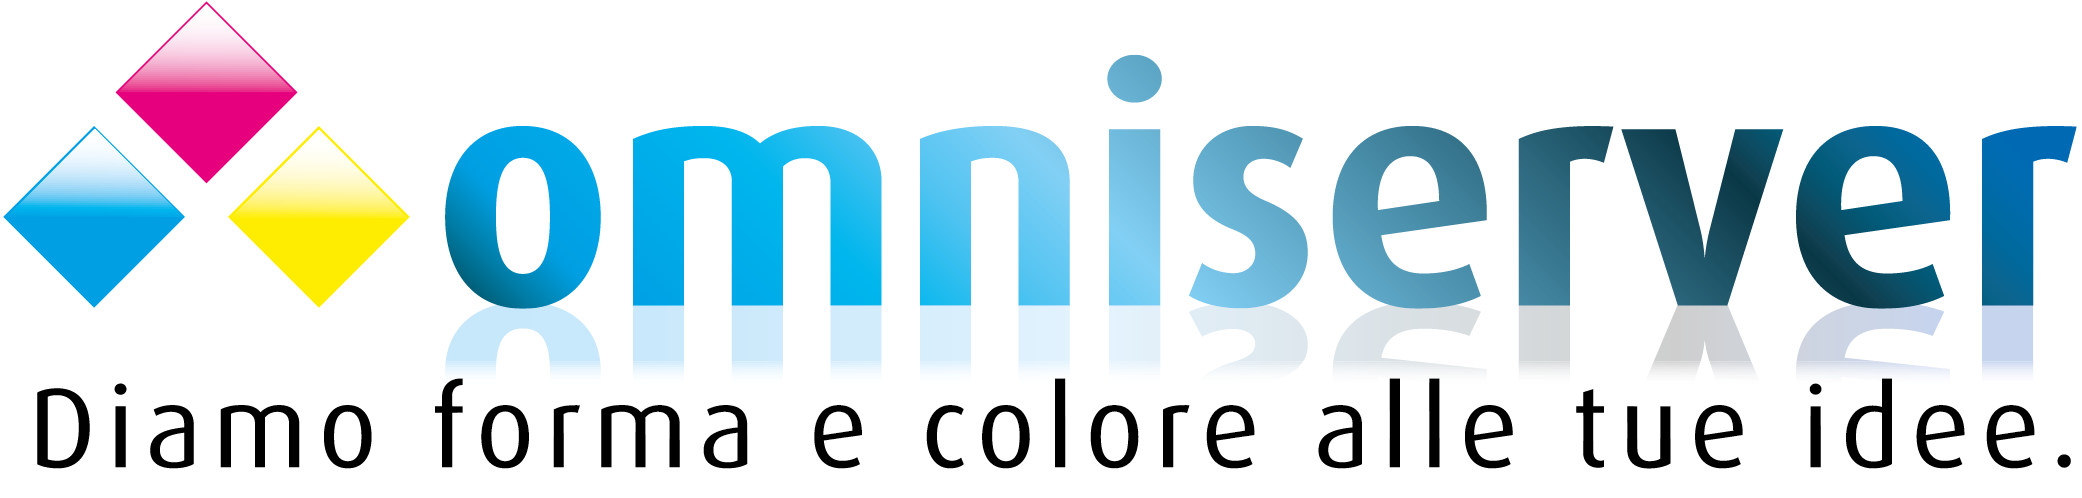 Logo Amniserver usata in home page del sito MTC